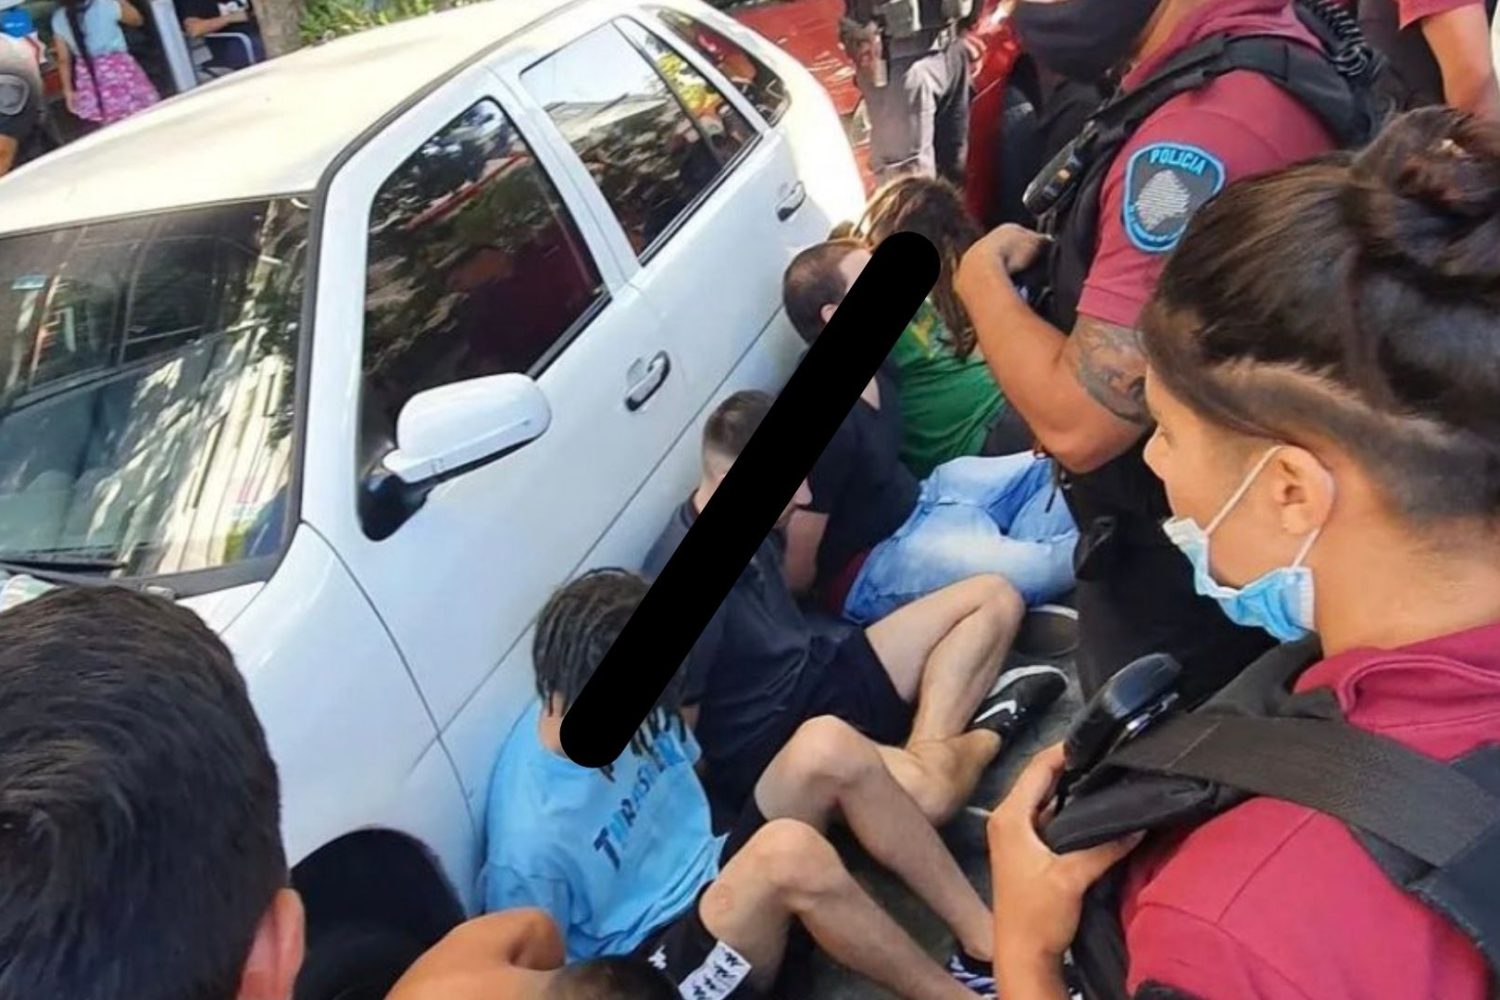 seis jóvenes violaron a una chica dentro de un carro en palermo